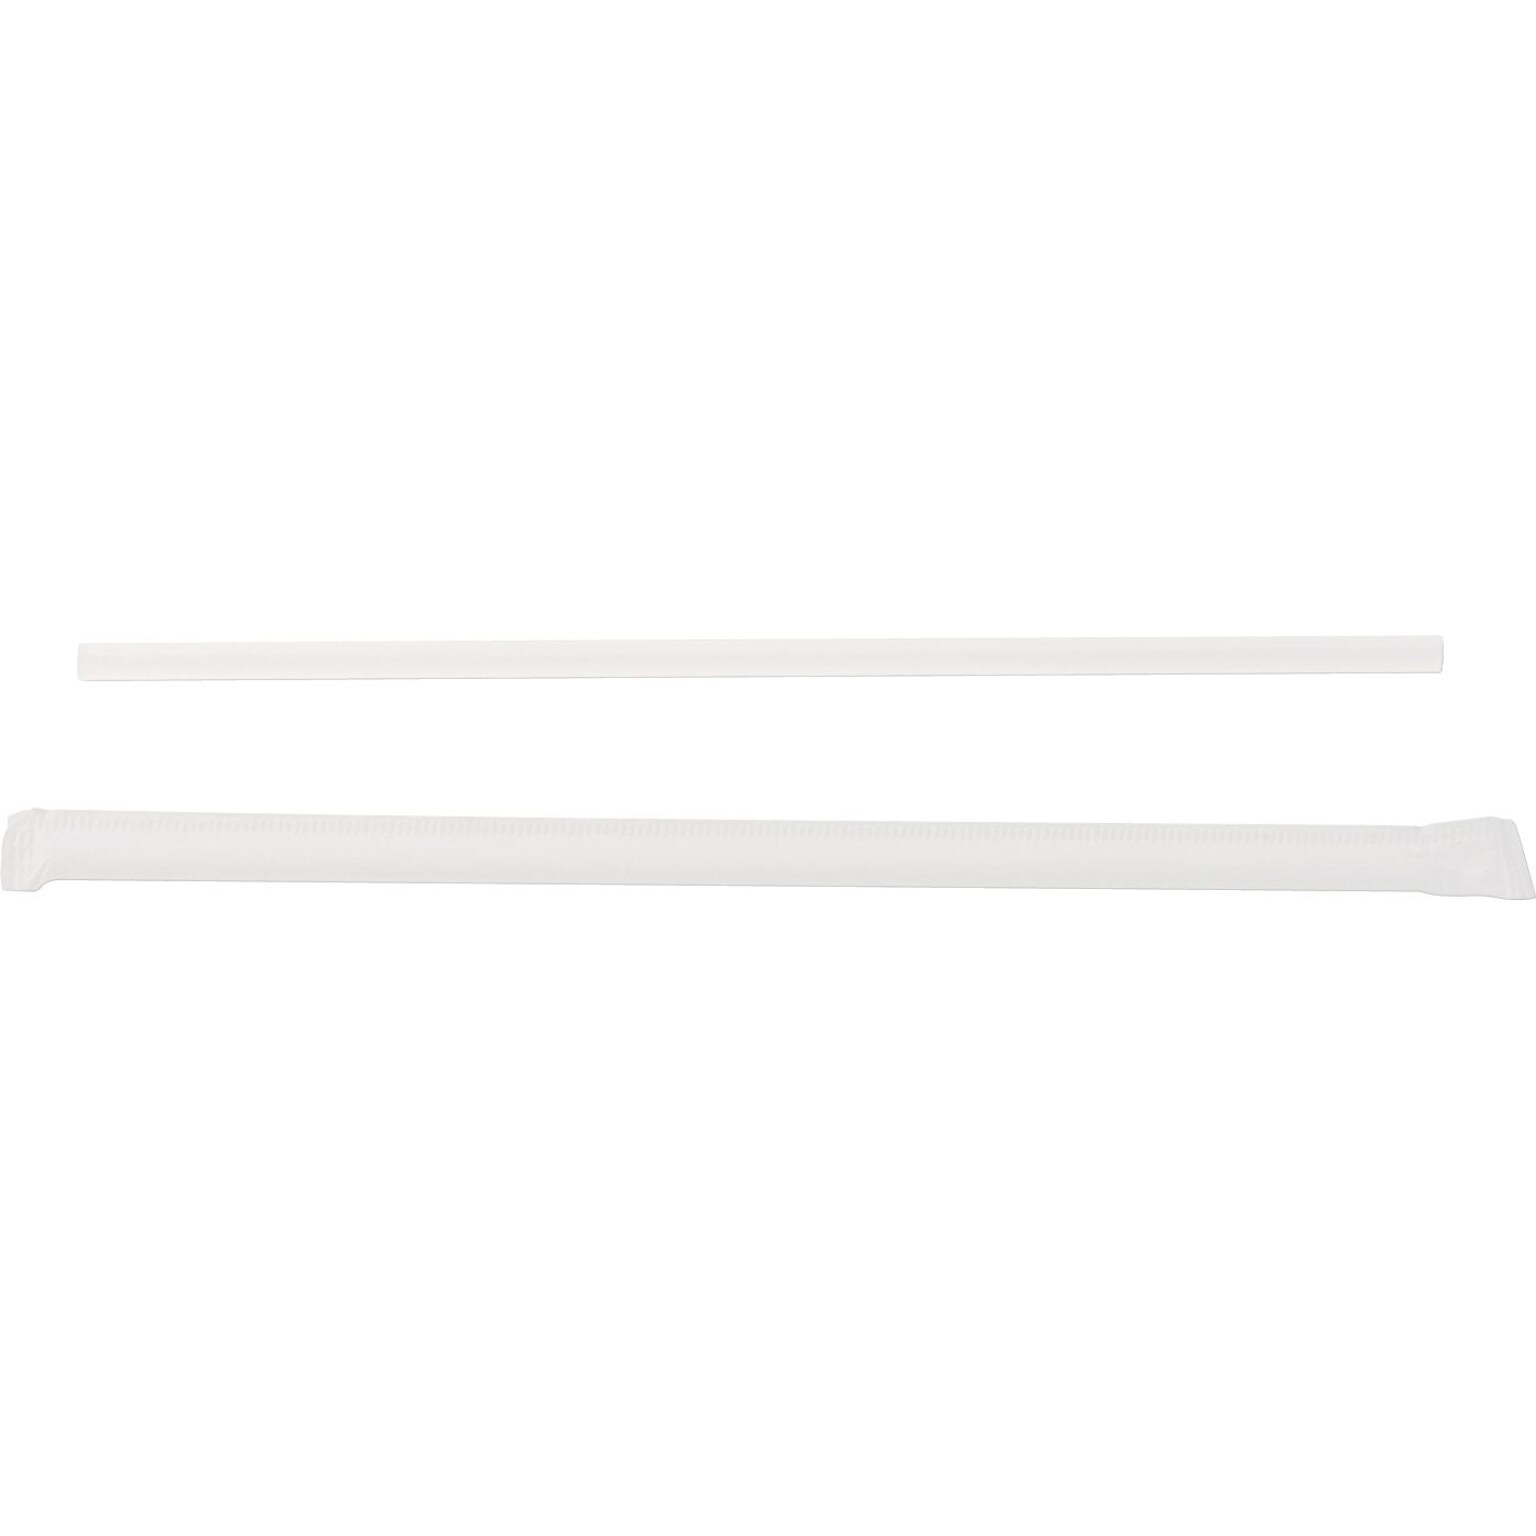 Dixie Wrapped Plastic Straws 7.75, Clear, 500/Box (DXEJW74)